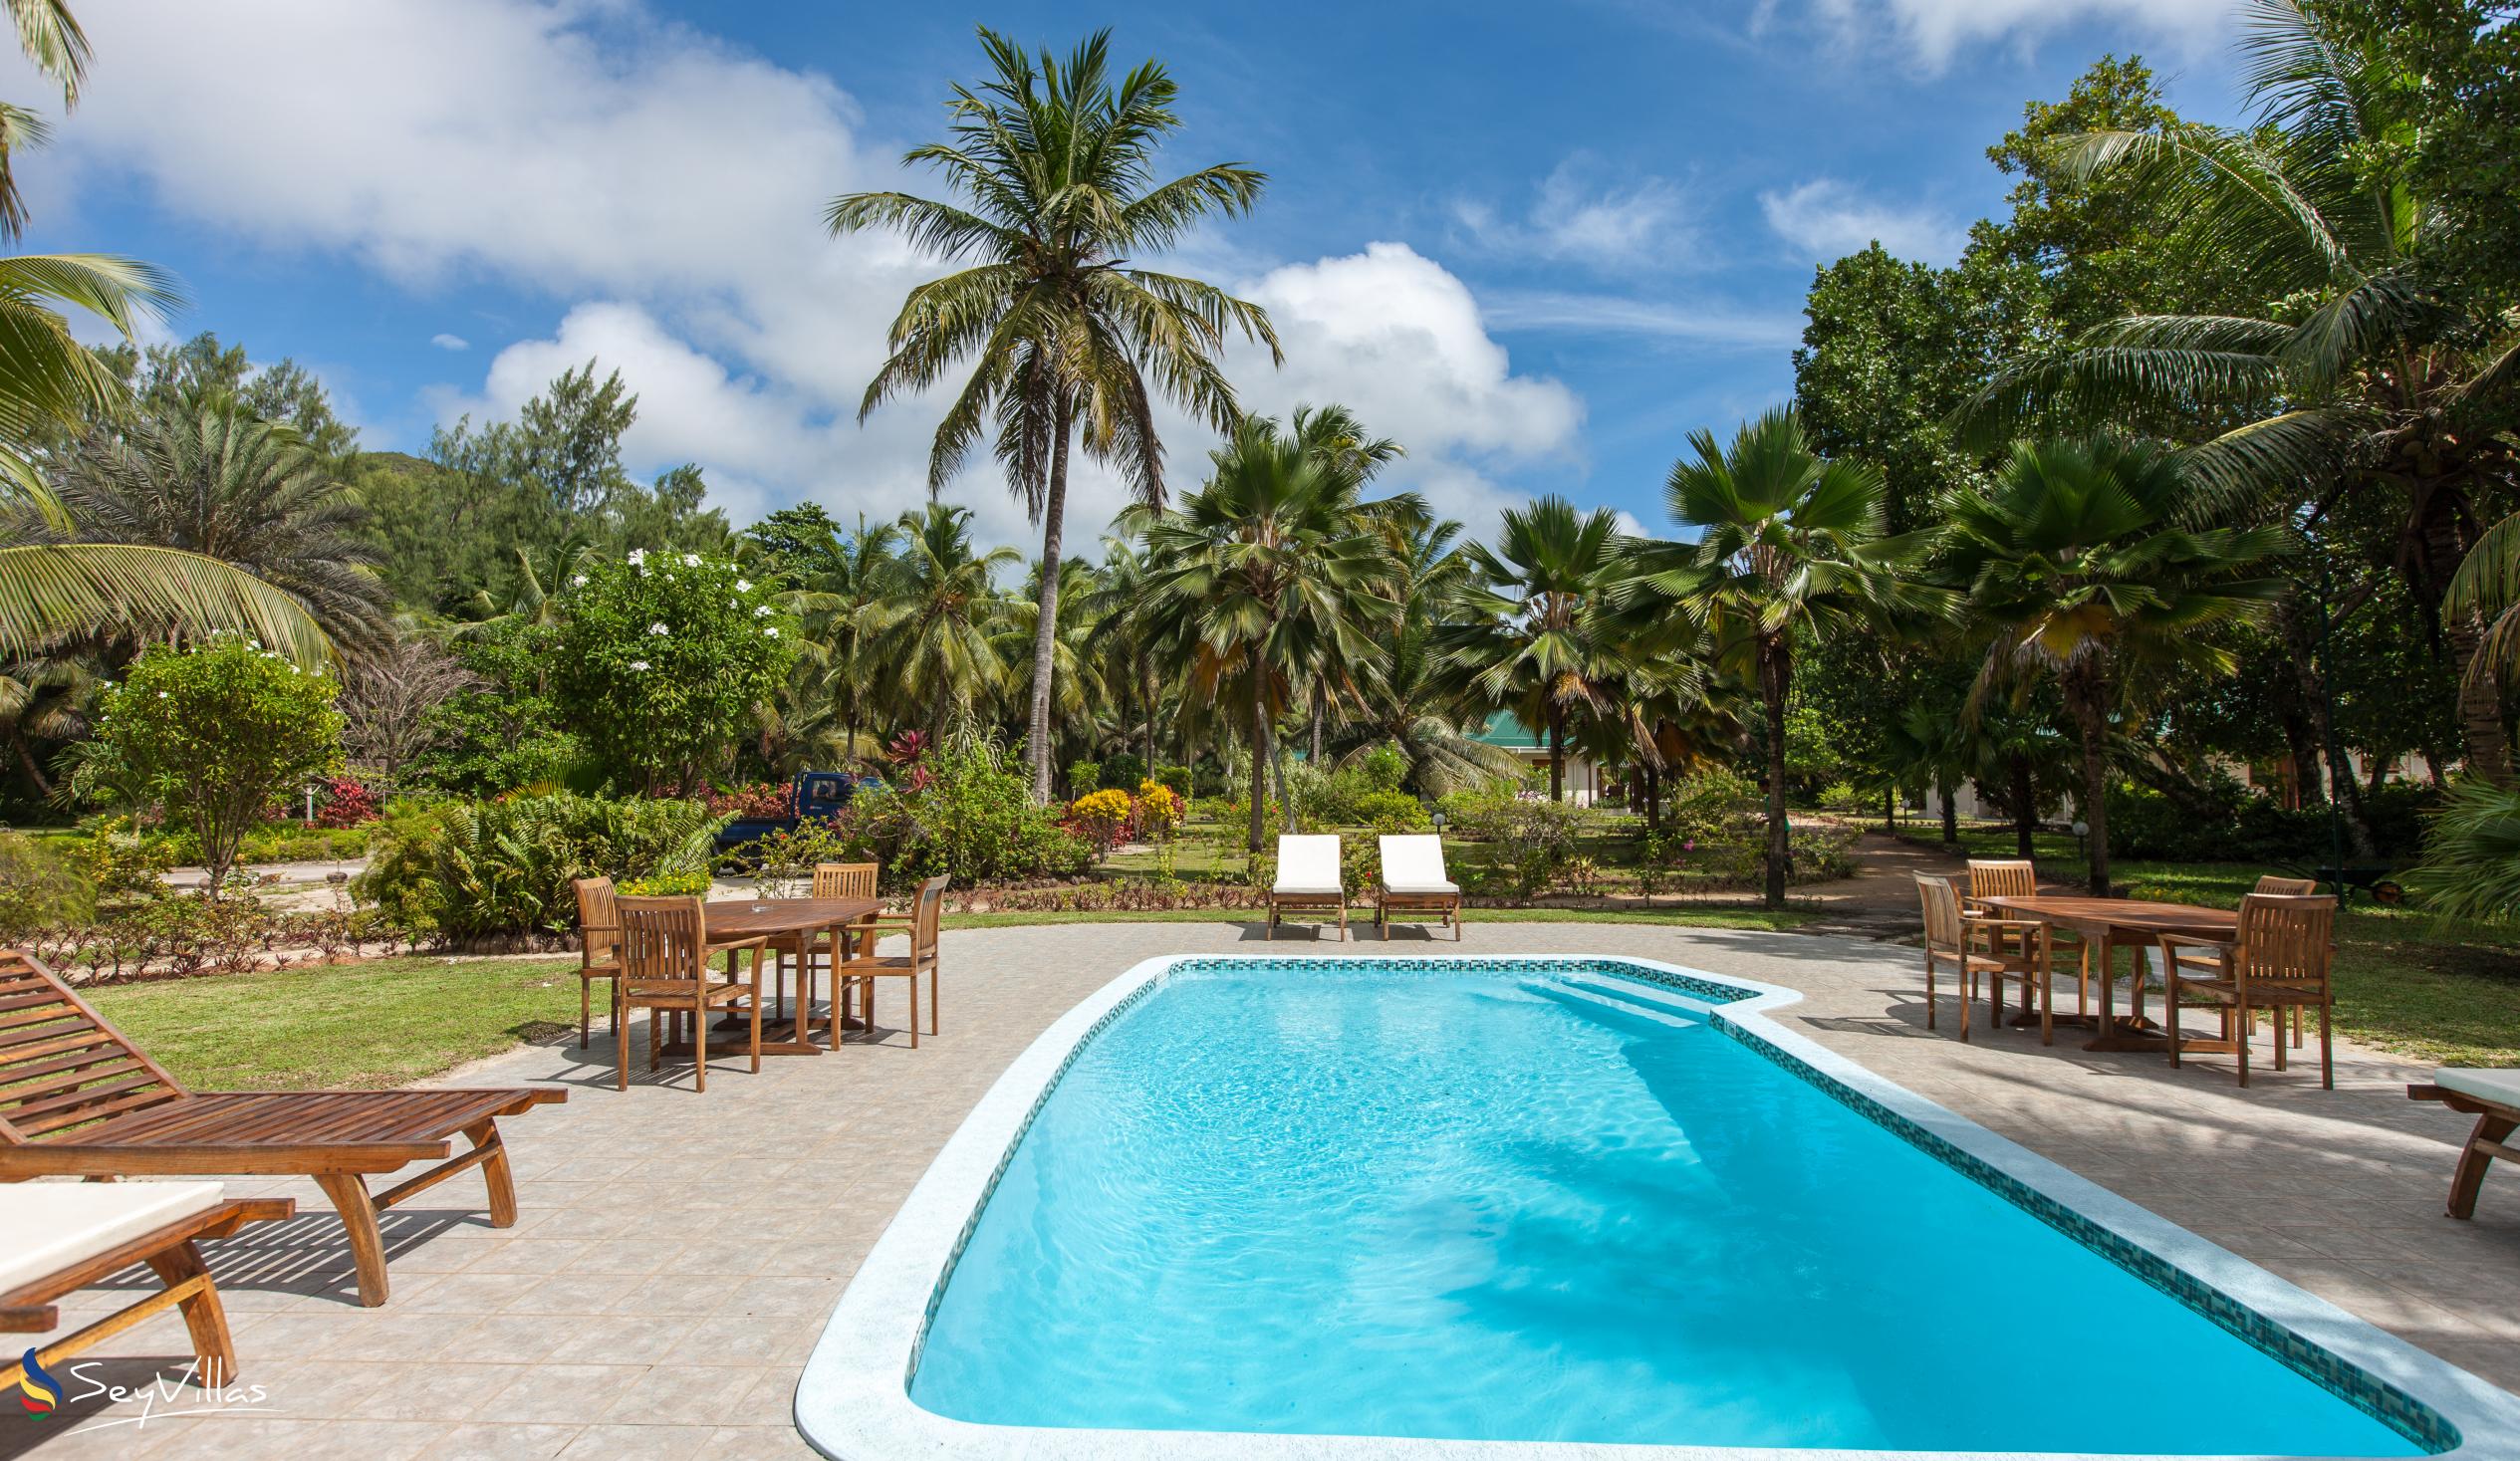 Photo 8: Les Villas D'Or - Outdoor area - Praslin (Seychelles)